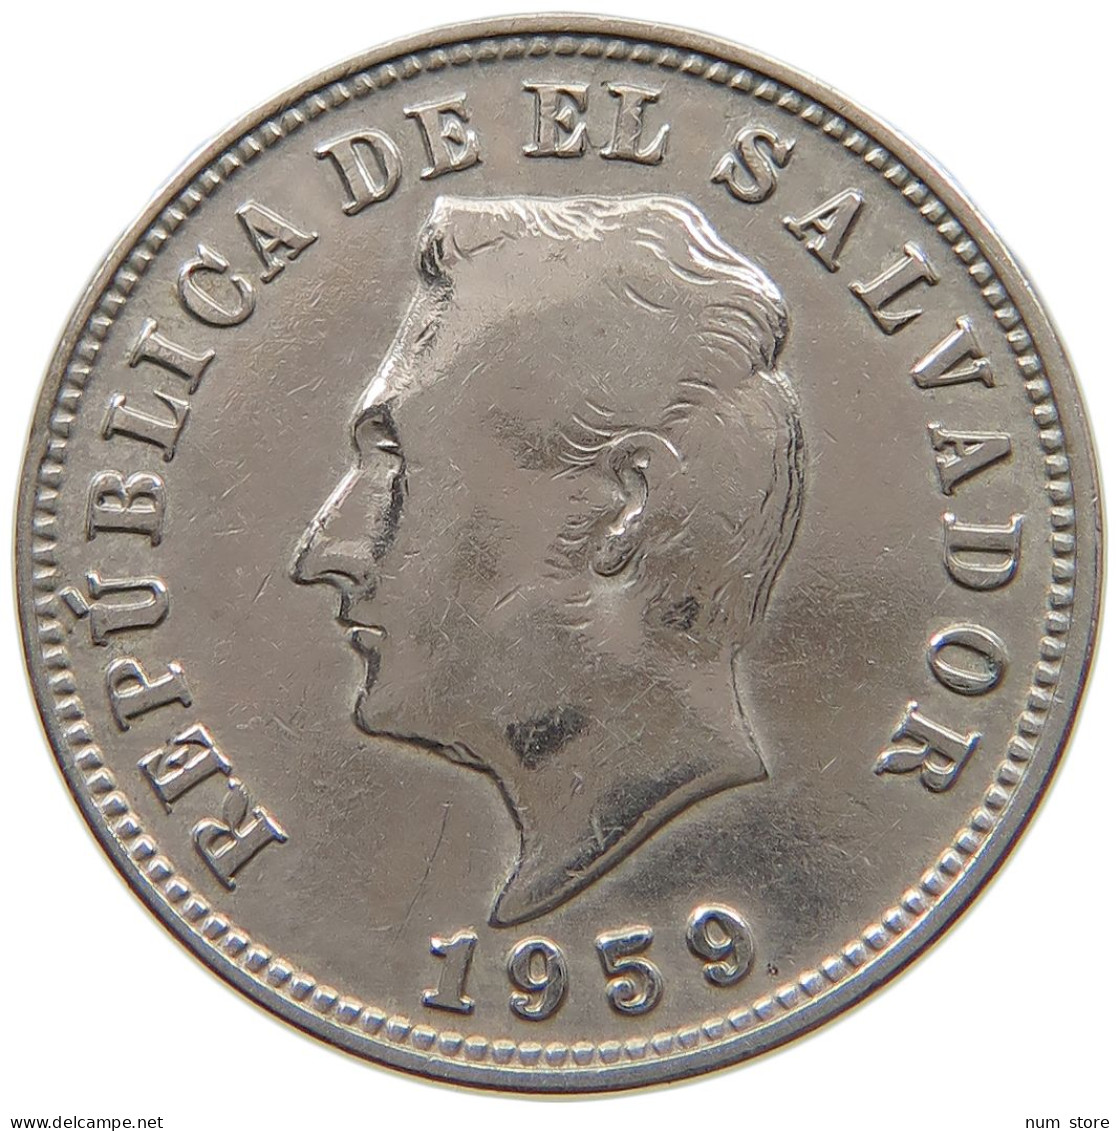 EL SALVADOR 5 CENTAVOS 1959  #s065 0455 - El Salvador